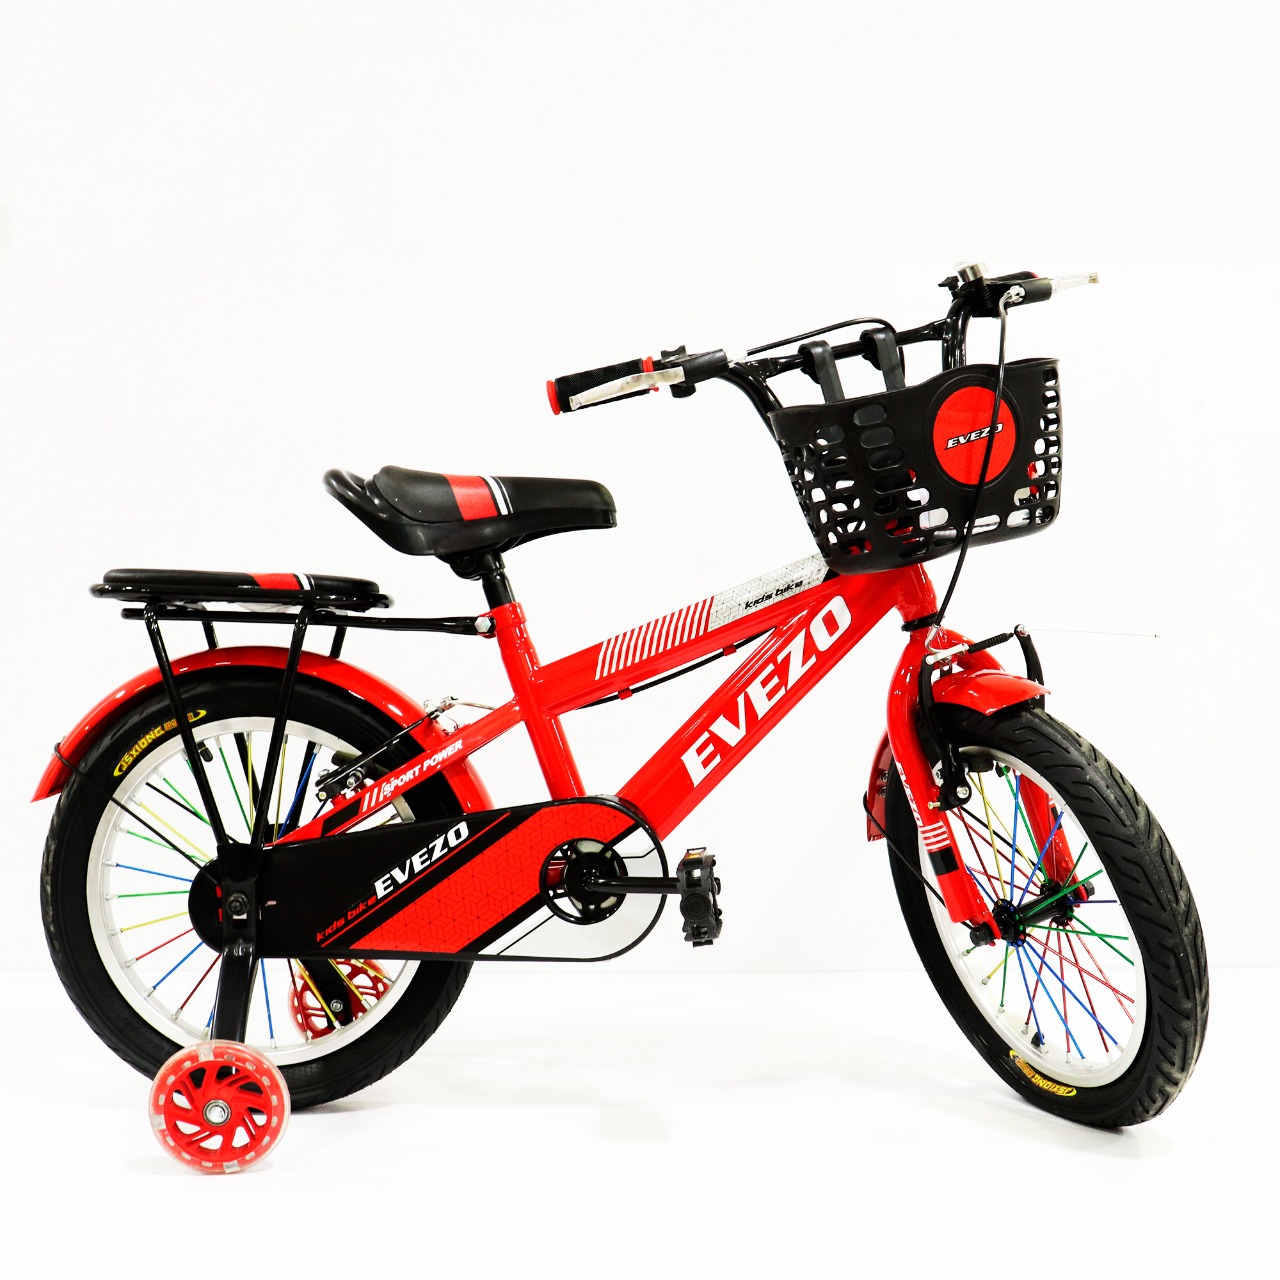 BICICLETAS - Tienda de bicicletas para niñas y niños